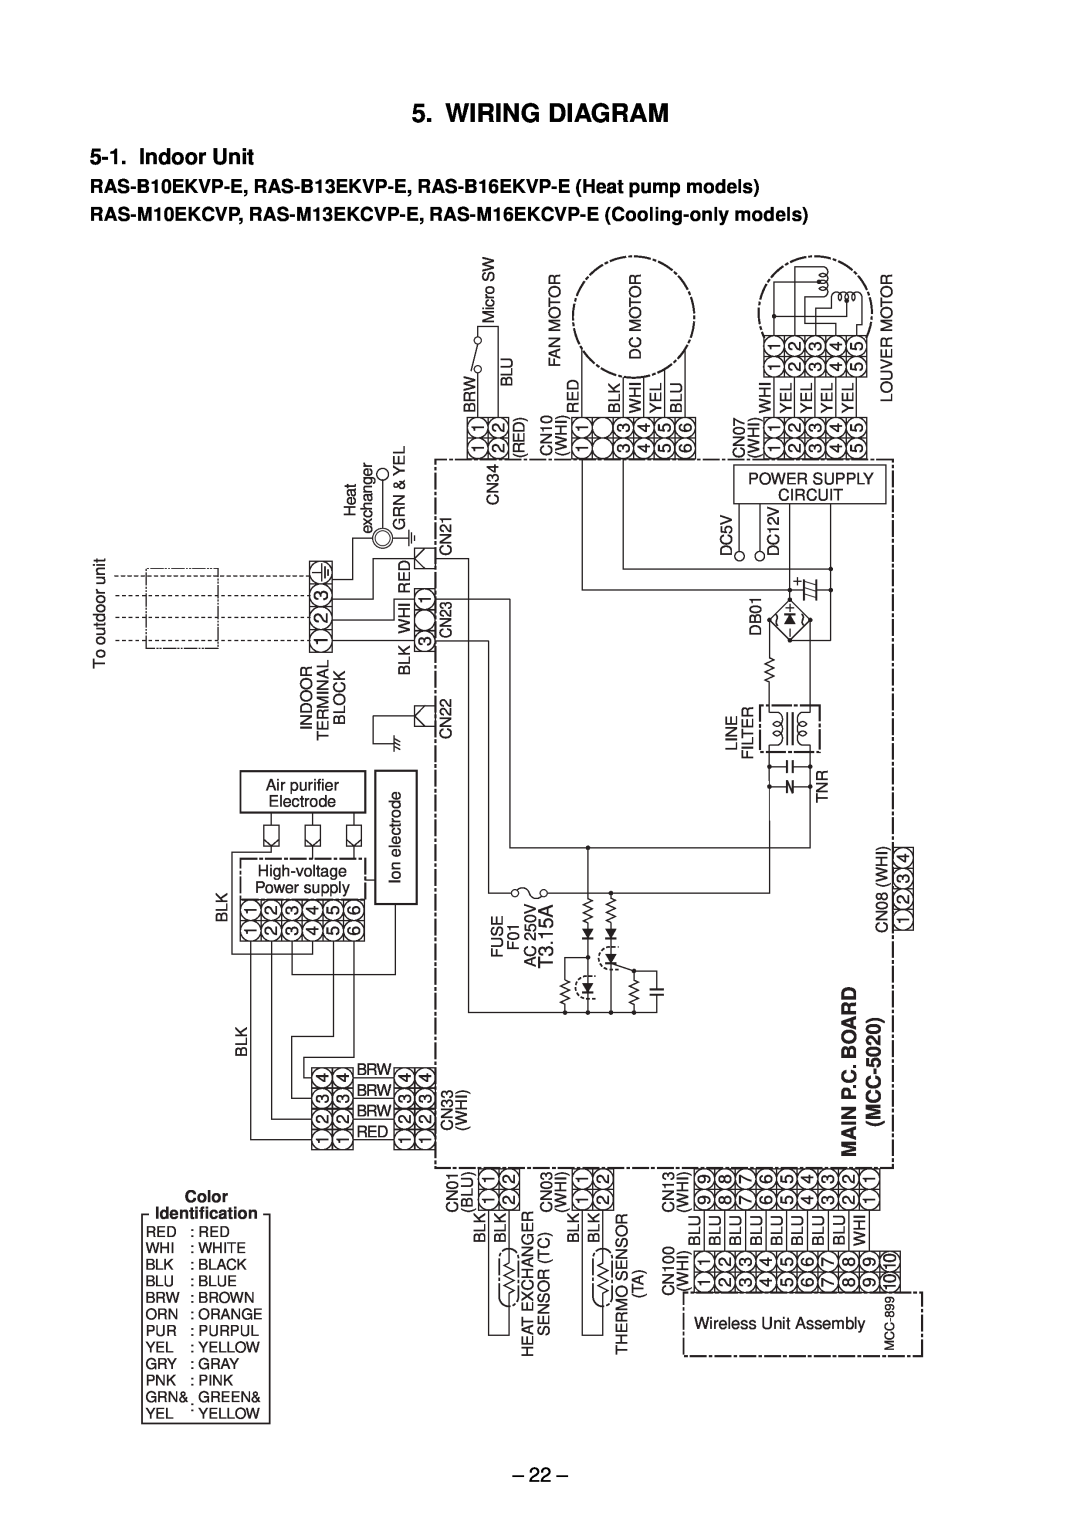 Toshiba RAS-M10EKCVP-E, RAS-M13EKCVP-E, RAS-M18EACV-E, RAS-M14EACV-E, RAS-M16EKCVP-E Wiring Diagram, Indoor Unit, T3.15A, 22 